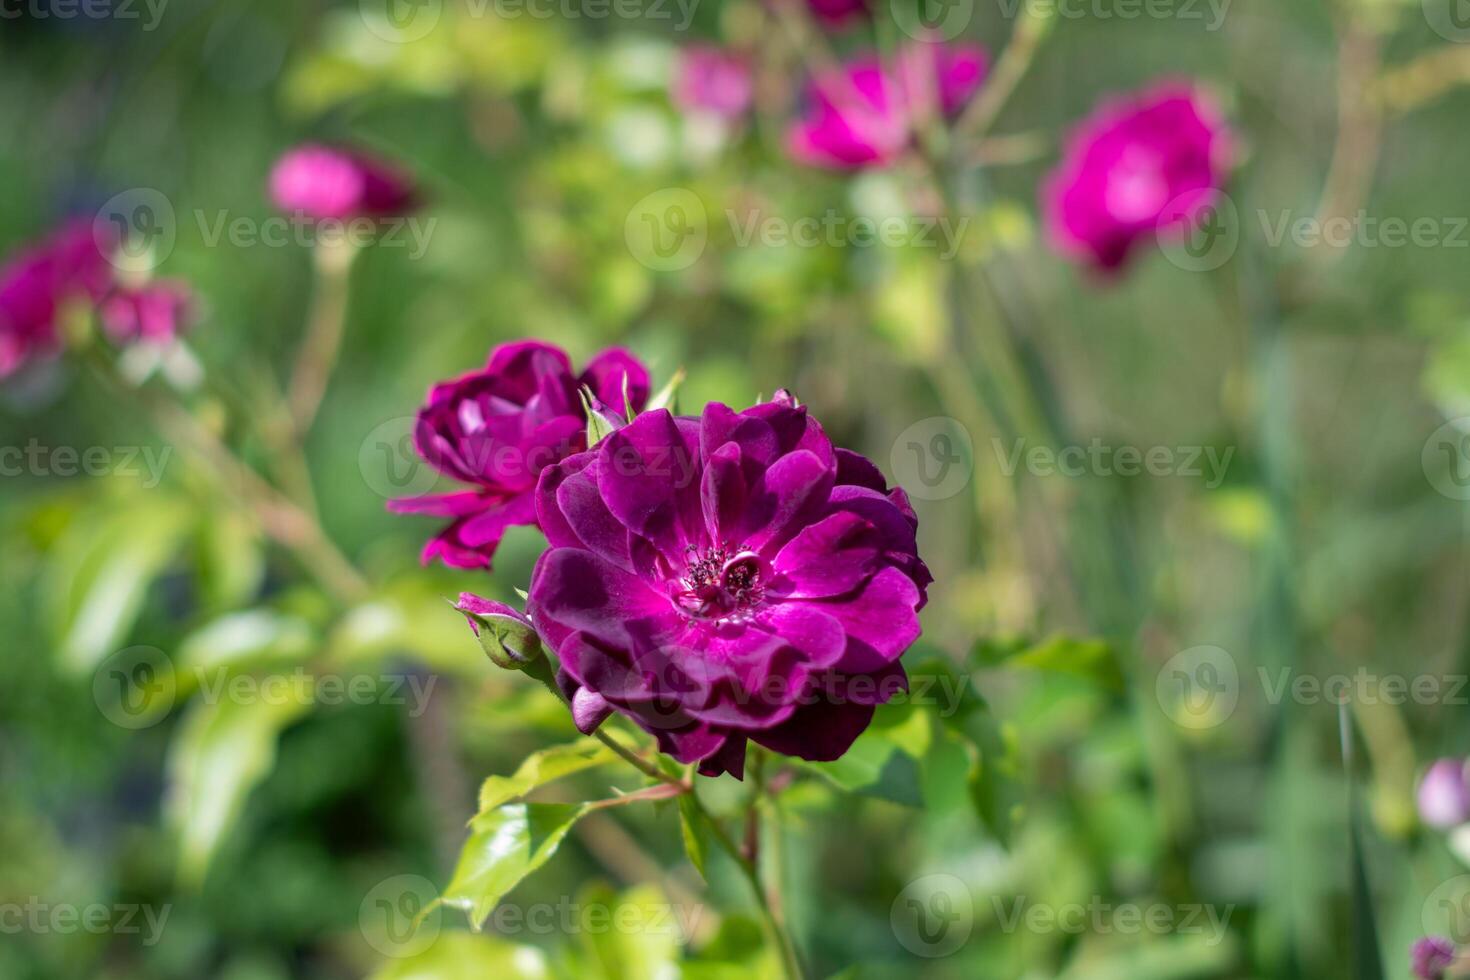 Purper paars gemengd kleur floribunda roos bordeaux ijs bloemen in de tuin, tegen wazig groen bladeren foto